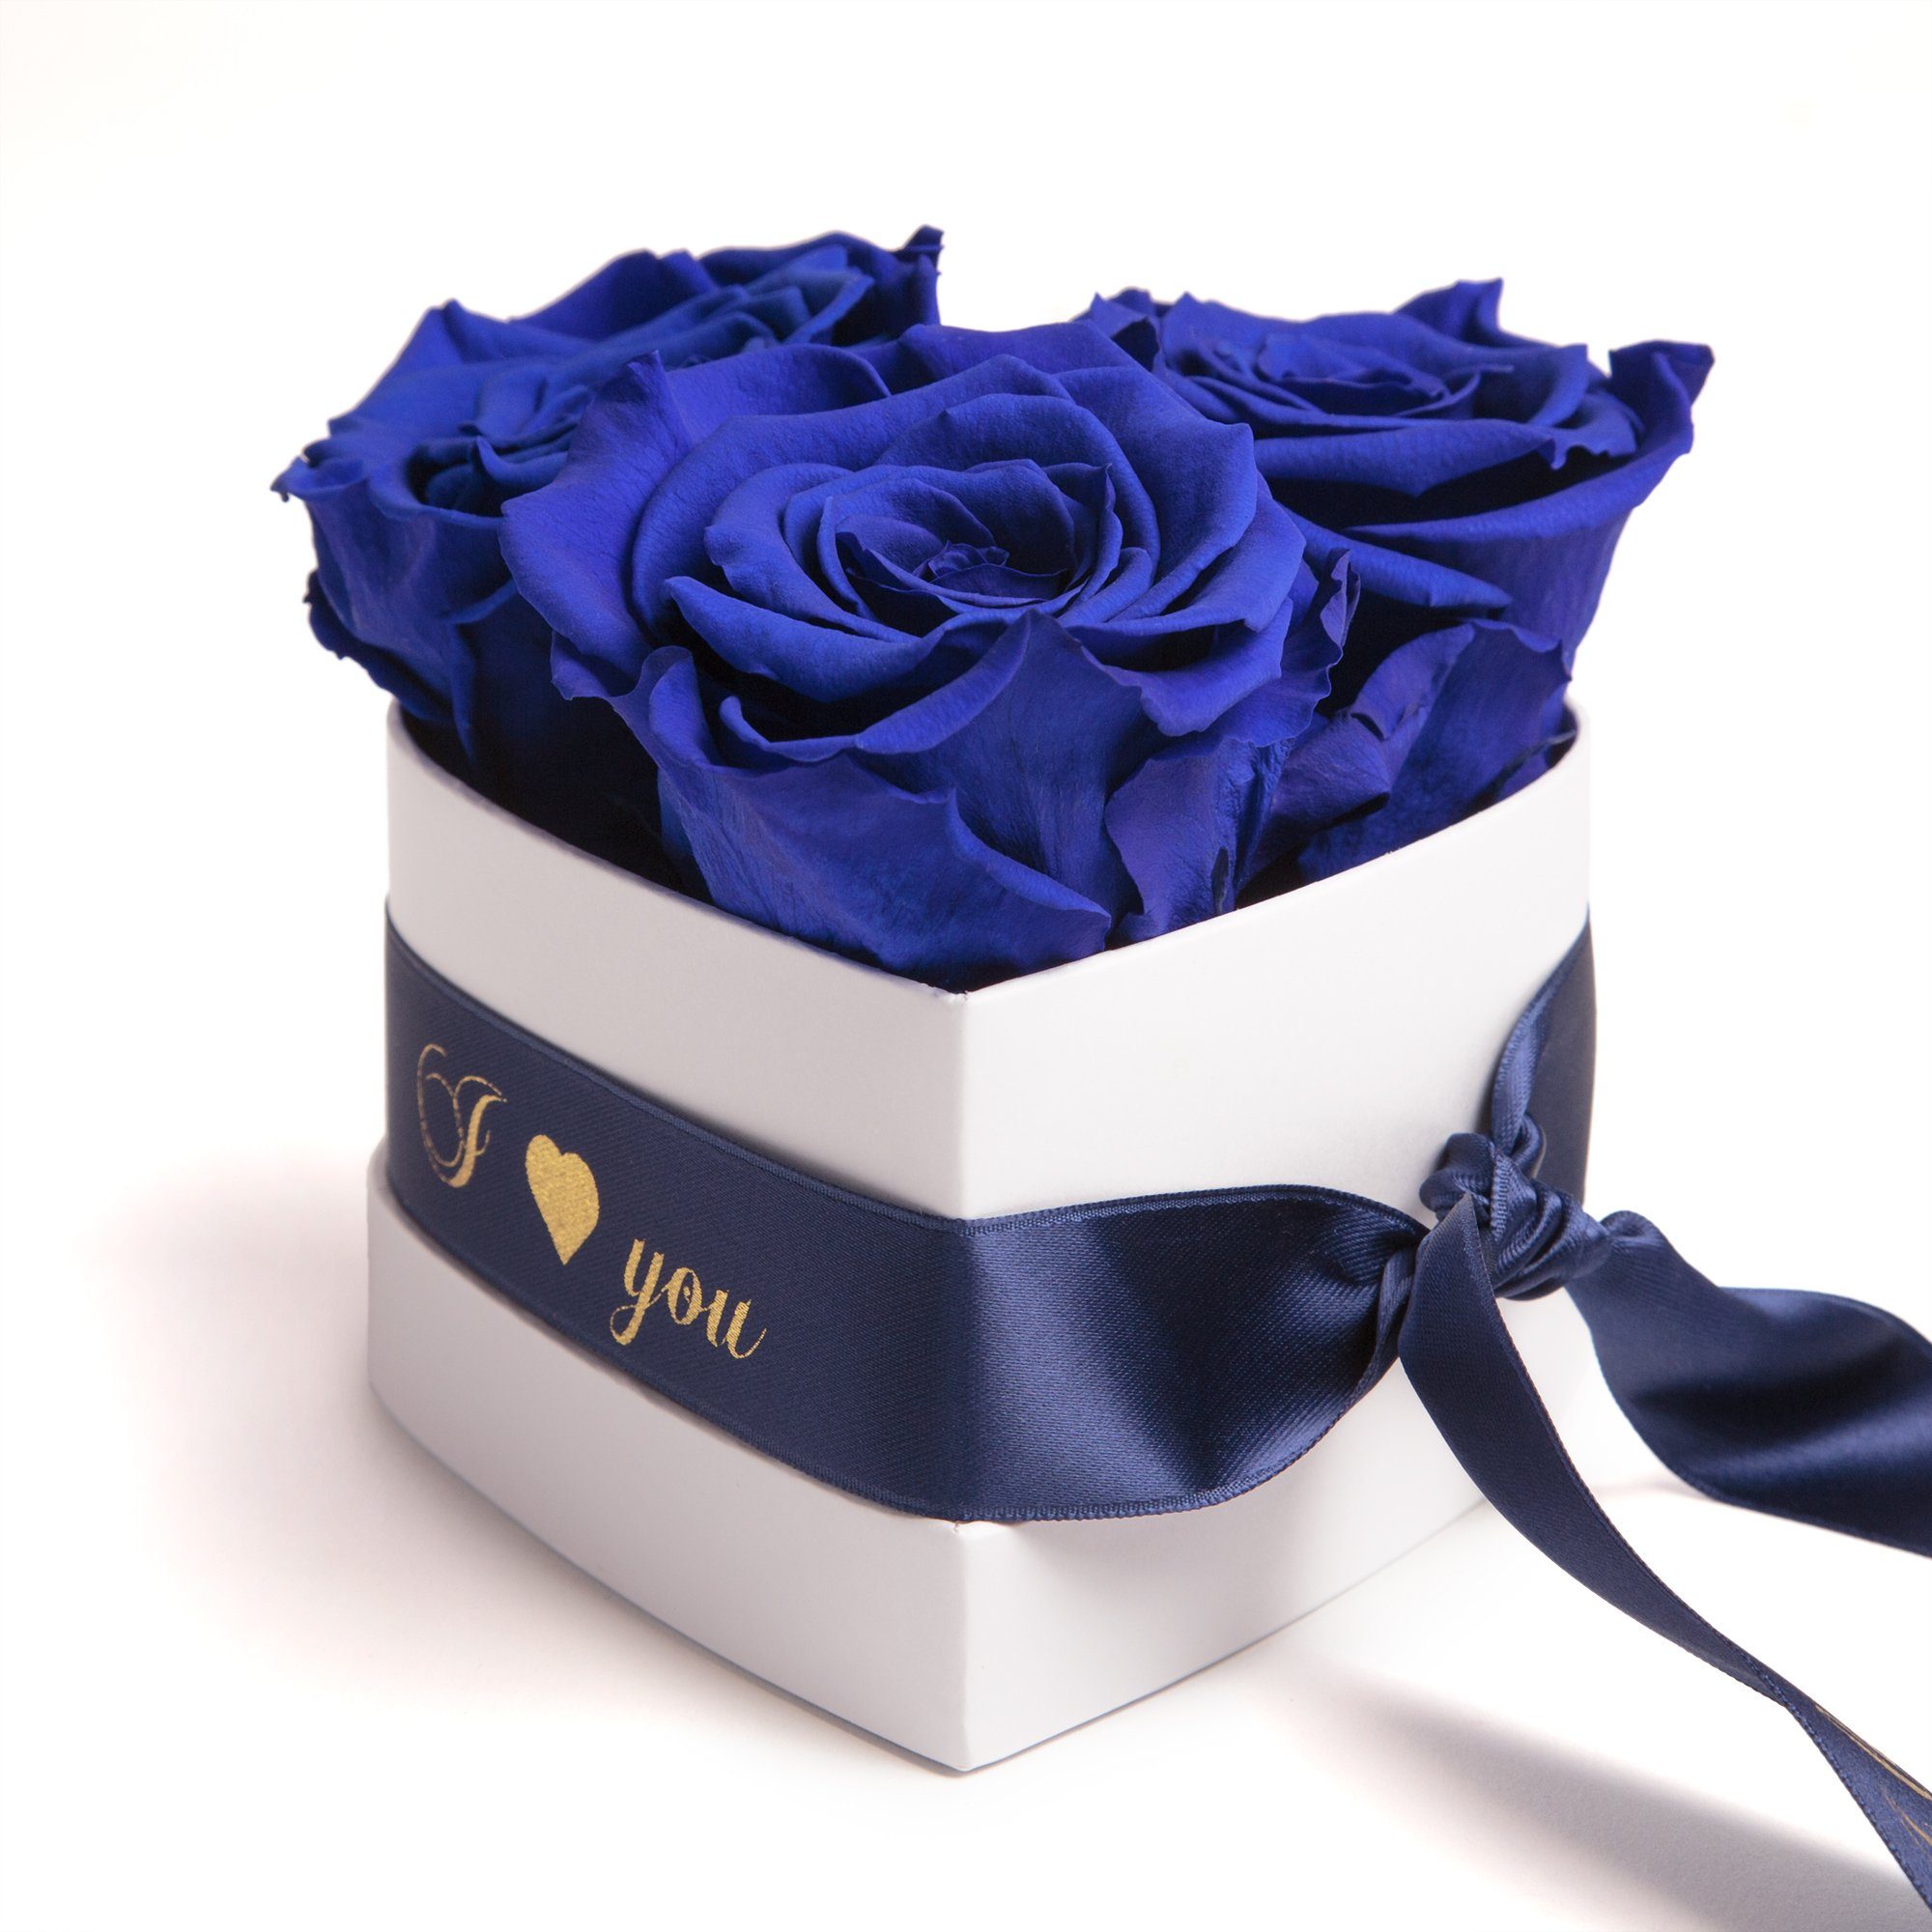 Kunstblume Rosenbox Herz 3 konservierte Infinity Rosen in Box I Love You Rose, ROSEMARIE SCHULZ Heidelberg, Höhe 8.5 cm, Valentinstag Geschenk für Sie Blau